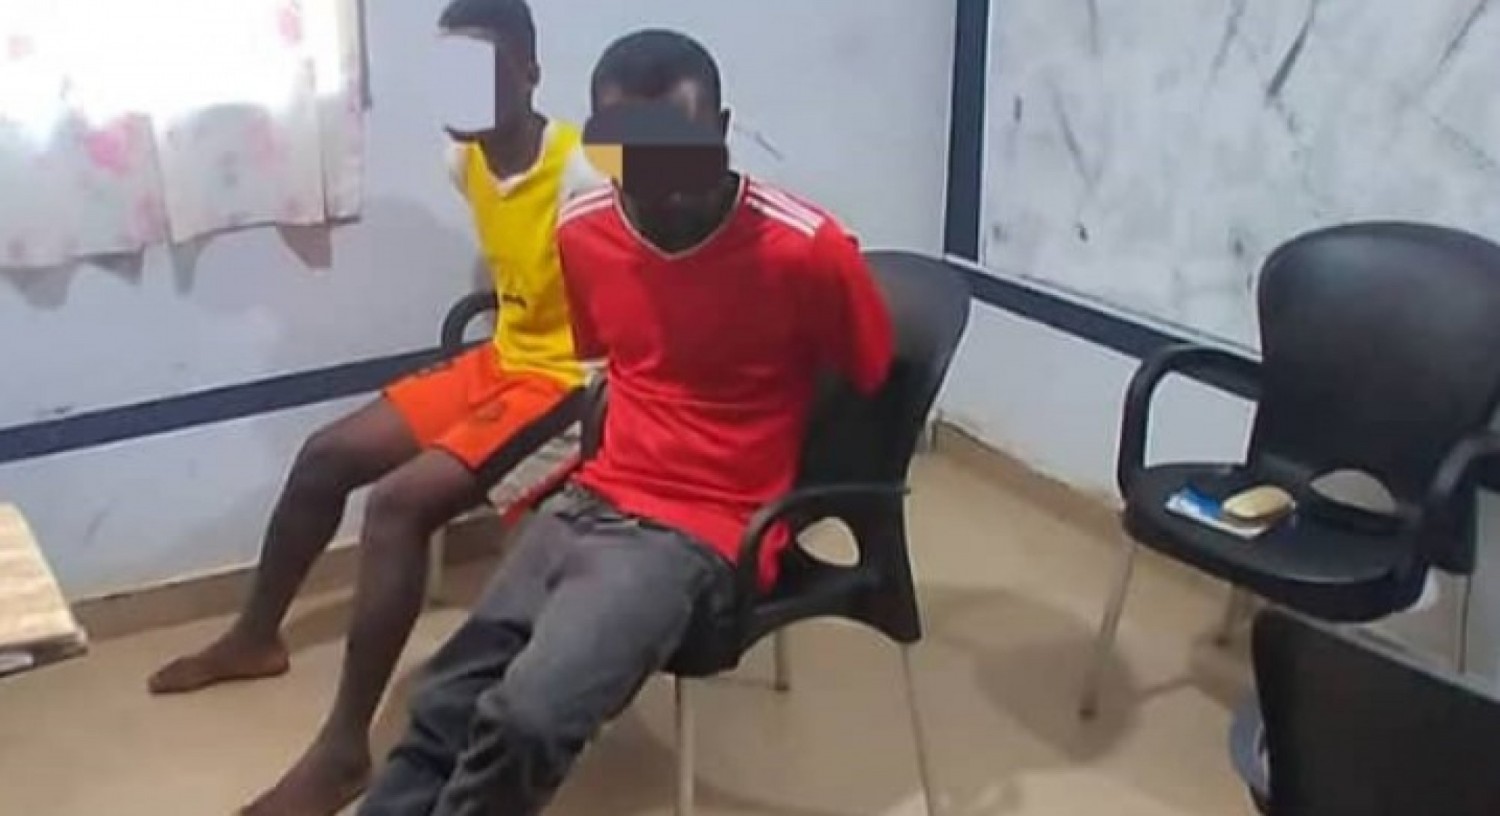 Côte d'Ivoire : Bayota, 02 frères accusés de séquestration et de viol présumé sur une fille de 13 ans pendant 5 jours